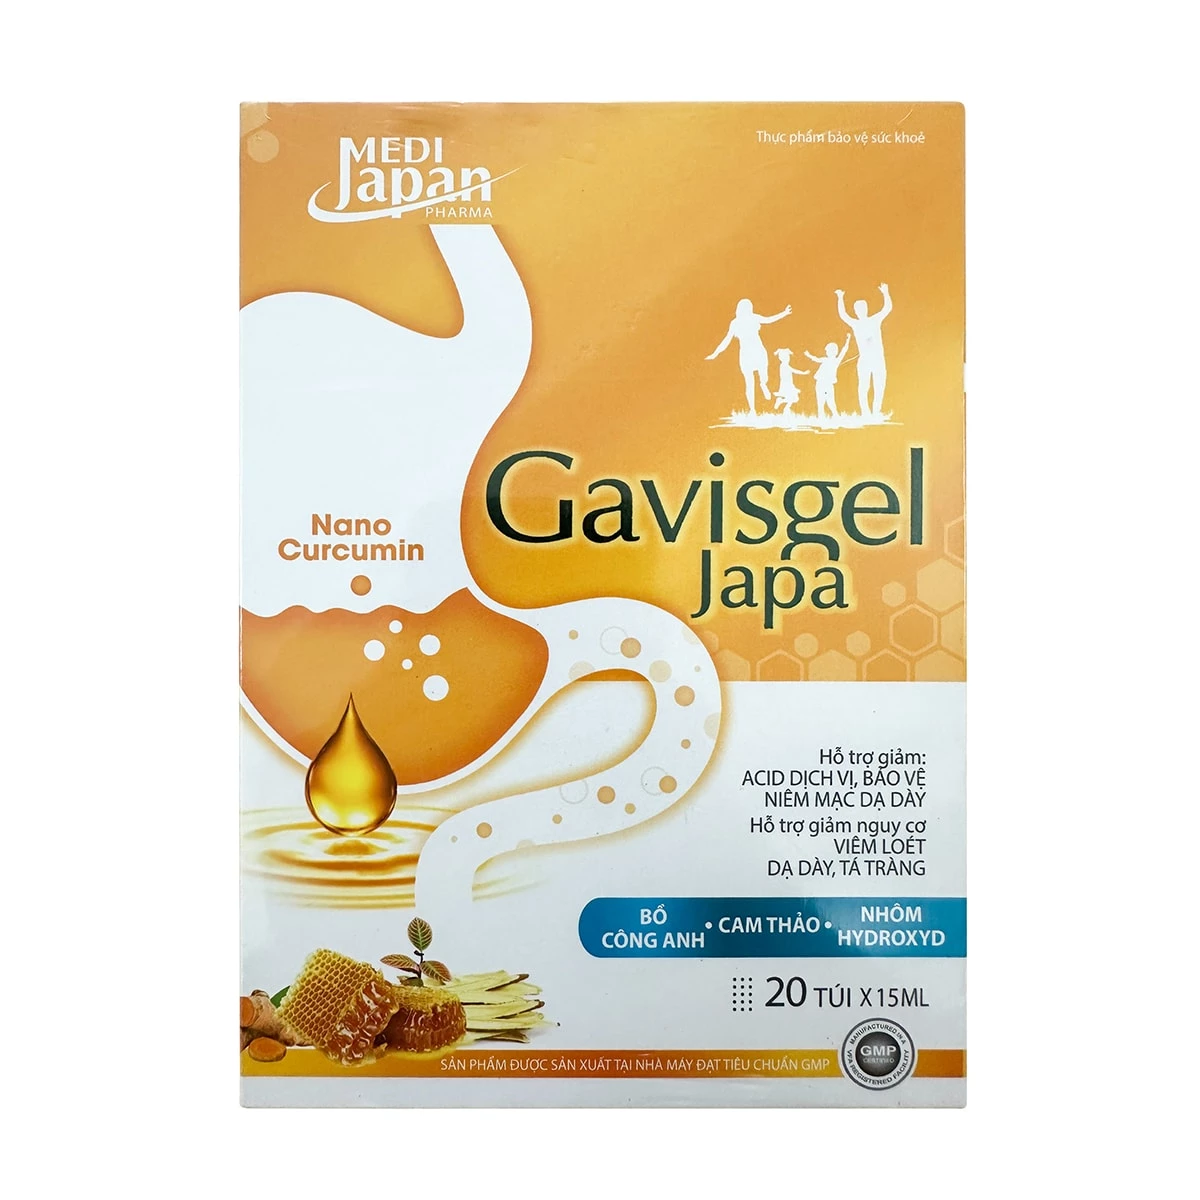 Gavisgel Japa - Hỗ trợ giảm viêm loét dạ dày, tá tràng